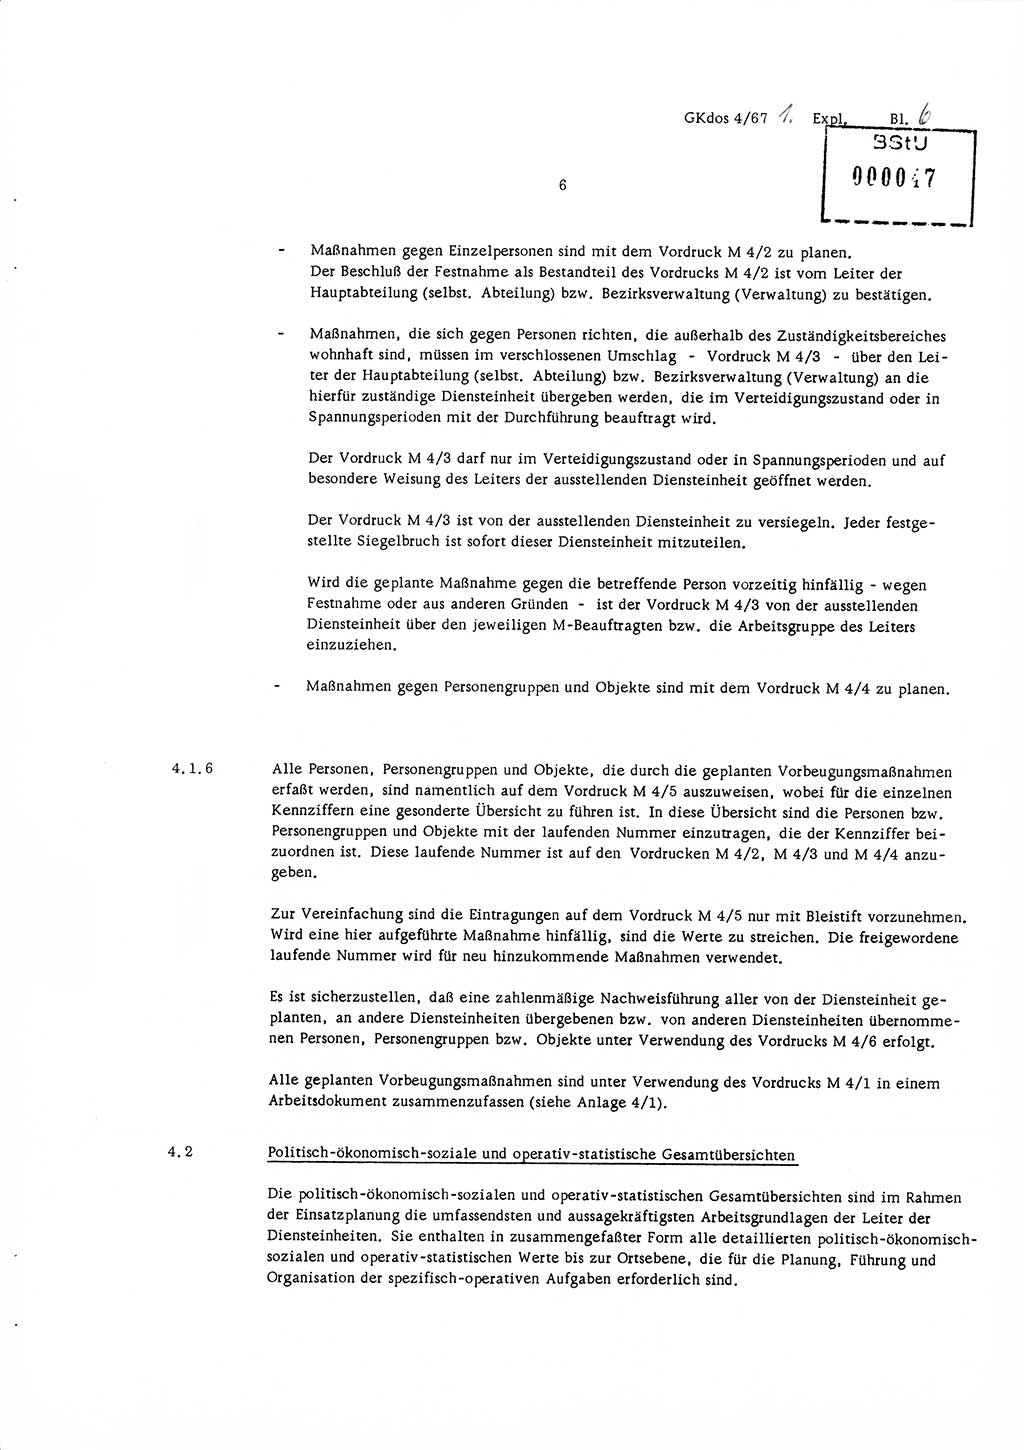 Durchführungsbestimmung Nr. 1 über die spezifisch-operative Mobilmachungsarbeit im Ministerium für Staatssicherheit (MfS) und in den nachgeordneten Diensteinheiten zur Direktive Nr. 4/67 des Ministers für Staatssicherheit, Deutsche Demokratische Republik (DDR), Ministerium für Staatssicherheit (MfS), Der Minister, Geheime Kommandosache (GKdos) 4/67, Berlin 1967, Seite 6 (DB 1 Dir. 1/67 DDR MfS Min. GKdos 4/67 1967, S. 6)